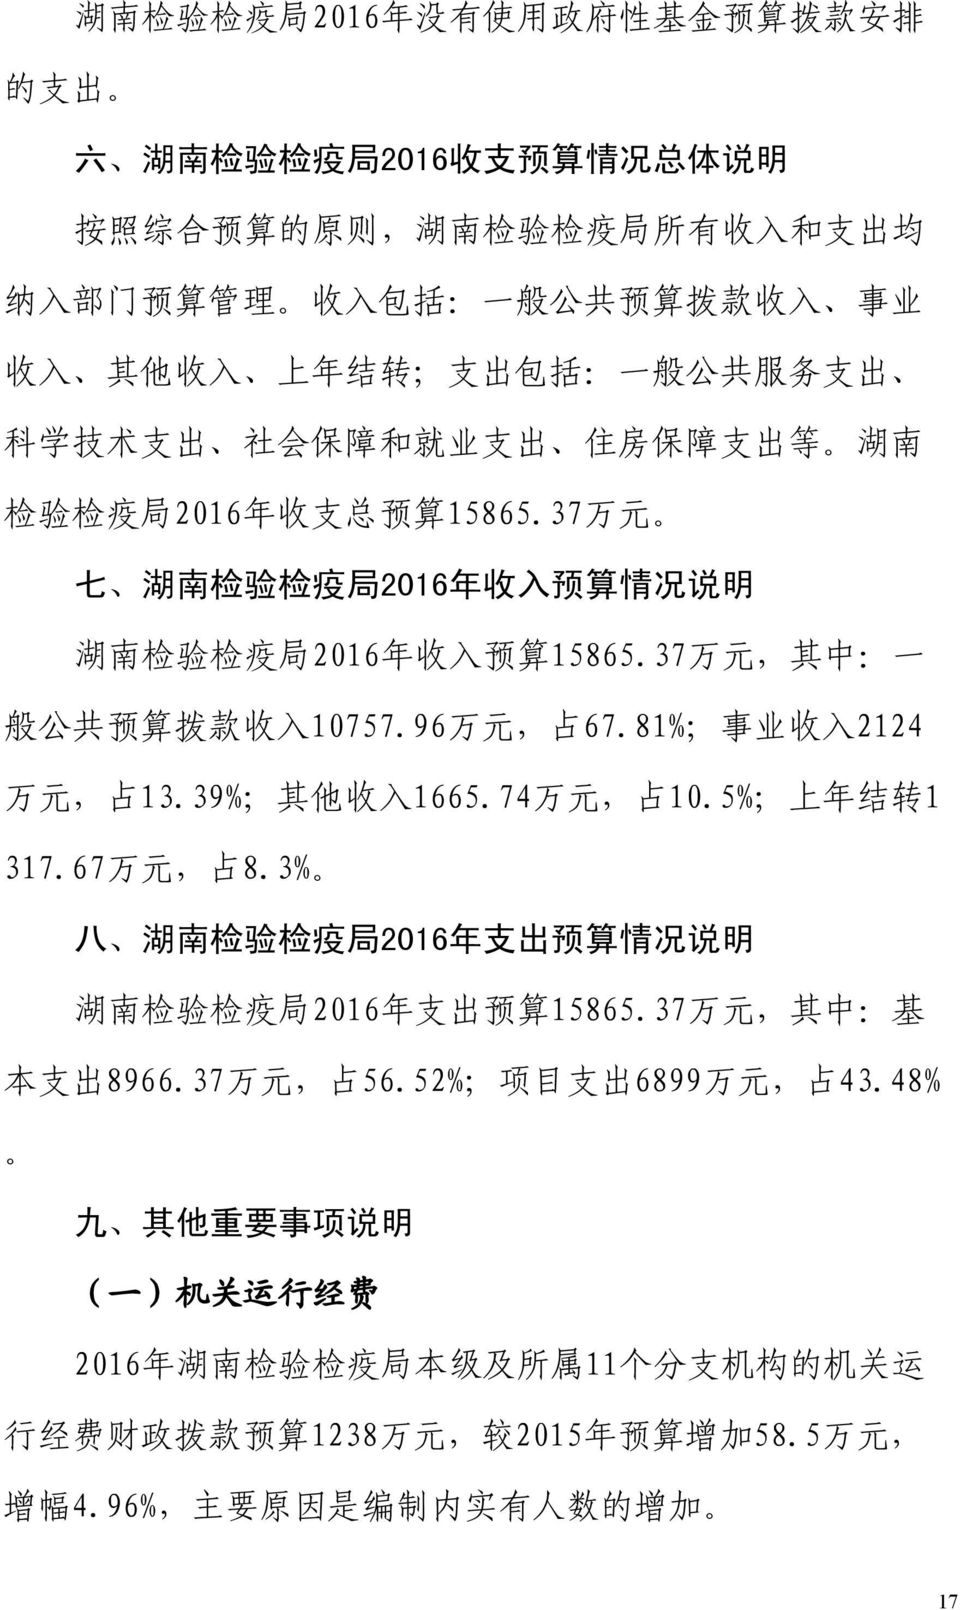 37 万 元 七 湖 南 检 验 检 疫 局 2016 年 收 入 预 算 情 况 说 明 湖 南 检 验 检 疫 局 2016 年 收 入 预 算 15865.37 万 元, 其 中 : 一 般 公 共 预 算 拨 款 收 入 10757.96 万 元, 占 67.81%; 事 业 收 入 2124 万 元, 占 13.39%; 其 他 收 入 1665.74 万 元, 占 10.